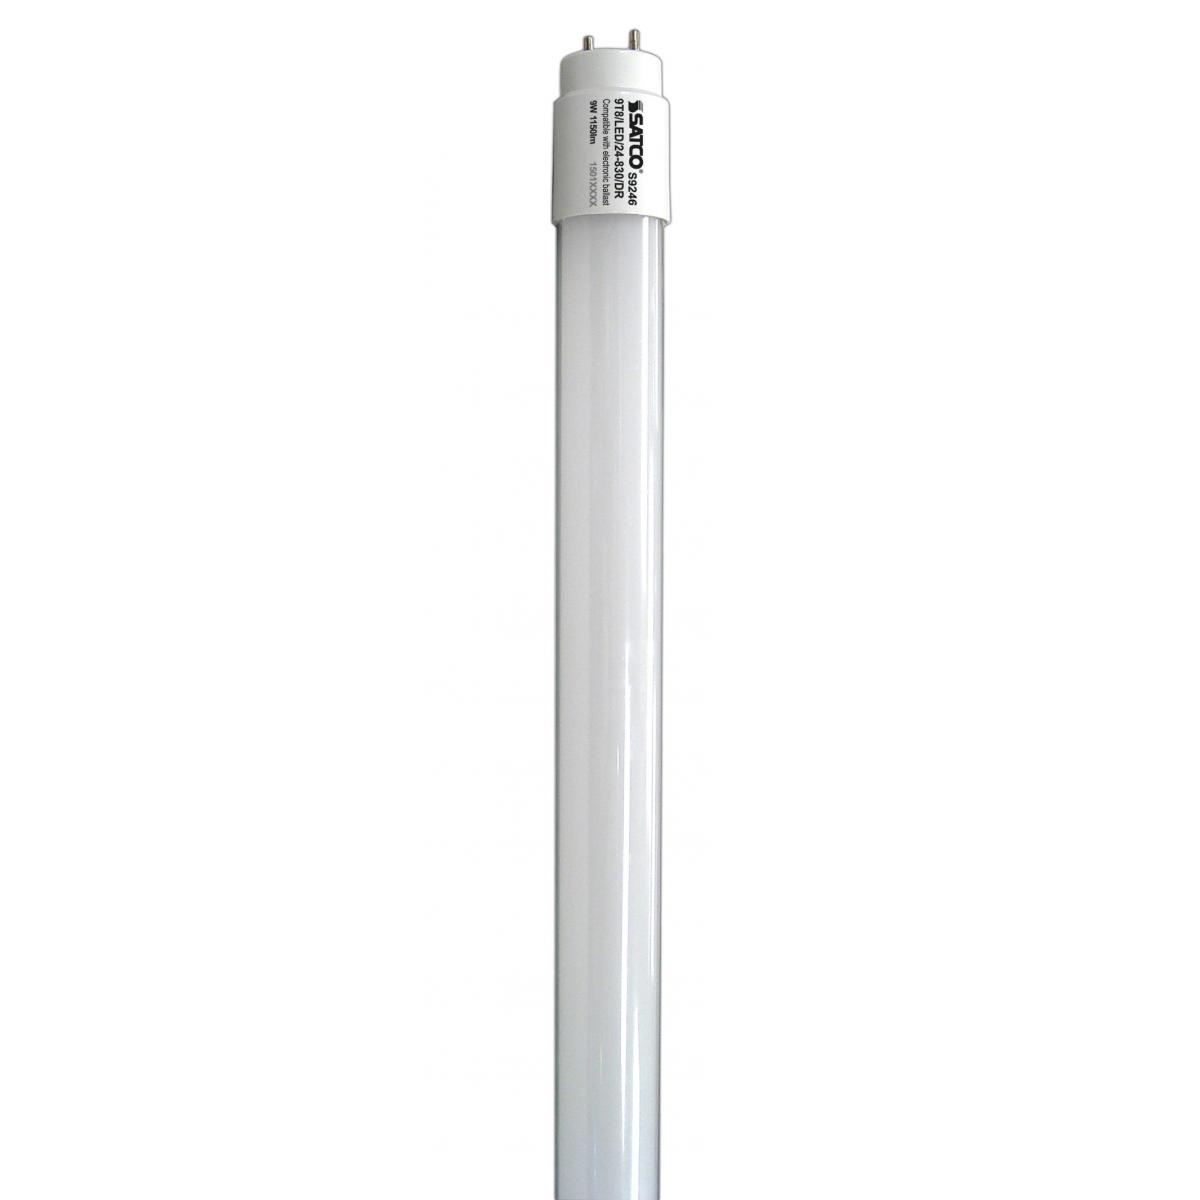 G13 Satco S9246 24" 9 Watt T8 Shaped Bi Pin Base LED Bulb 